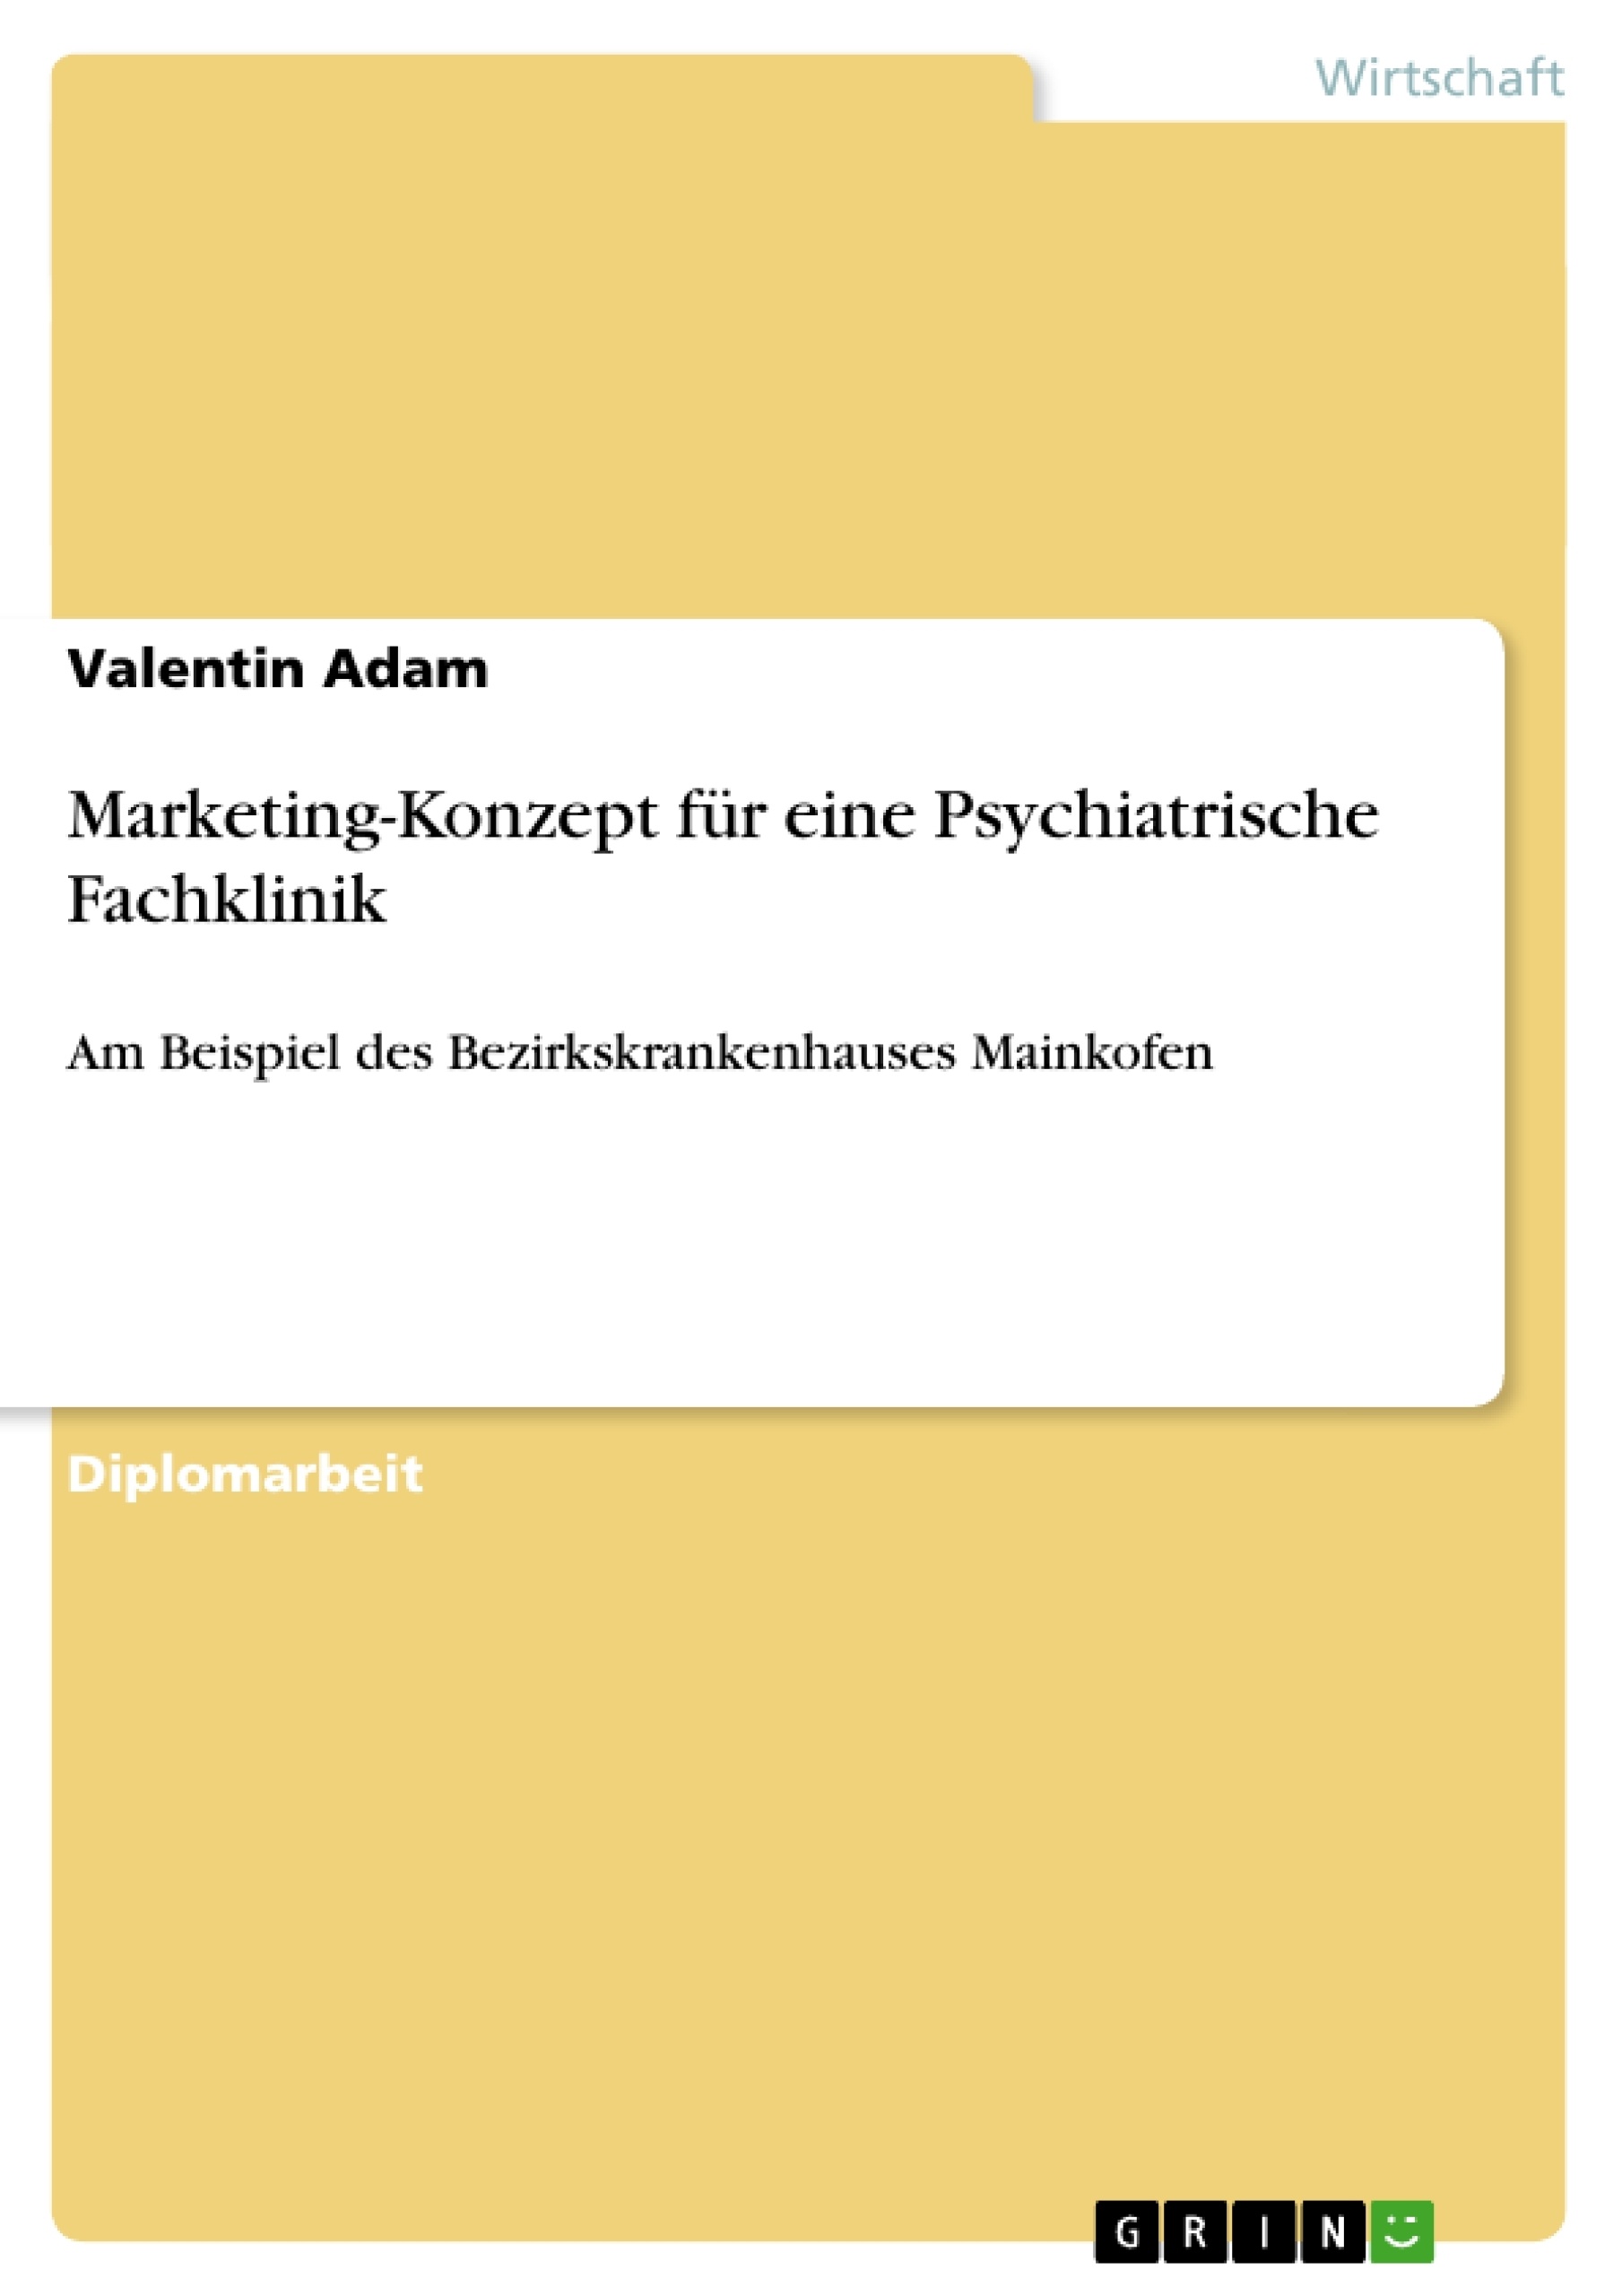 Título: Marketing-Konzept für eine Psychiatrische Fachklinik